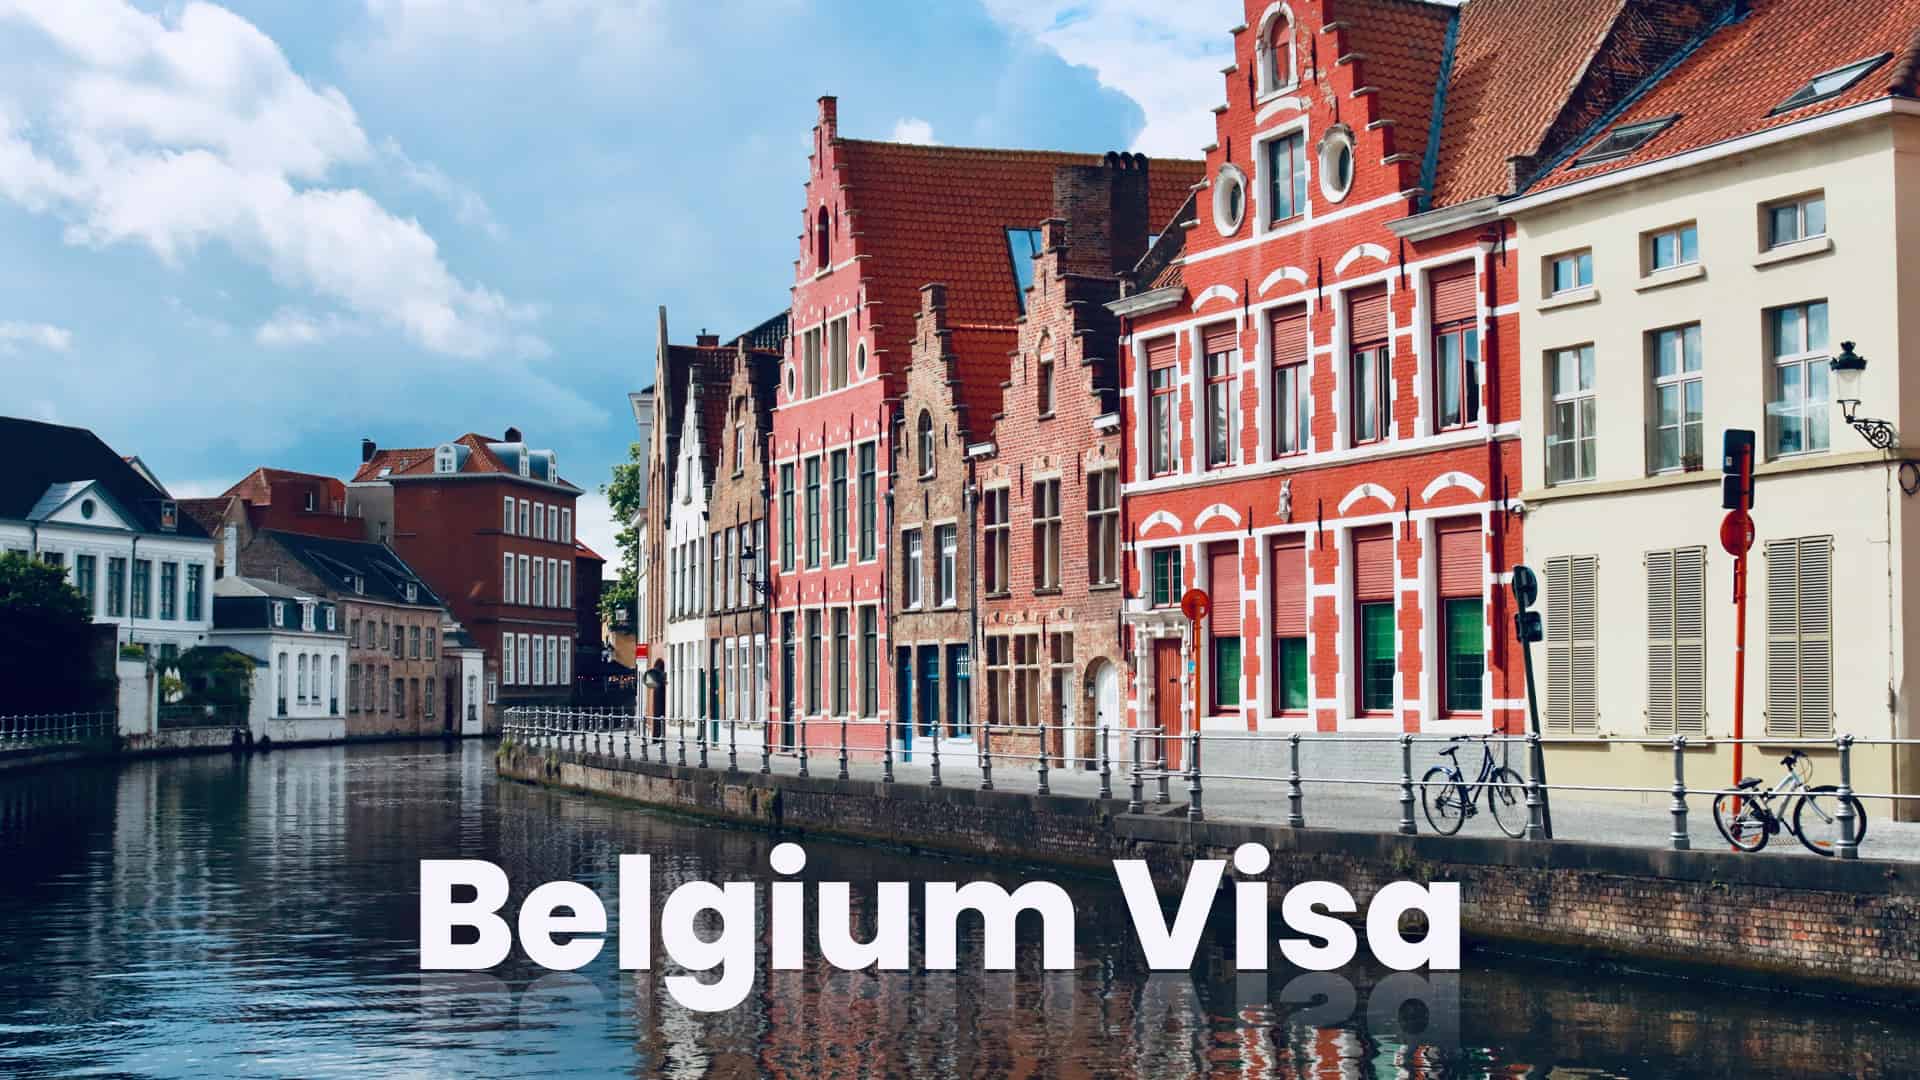 Belgium visa from Dubai, UAE